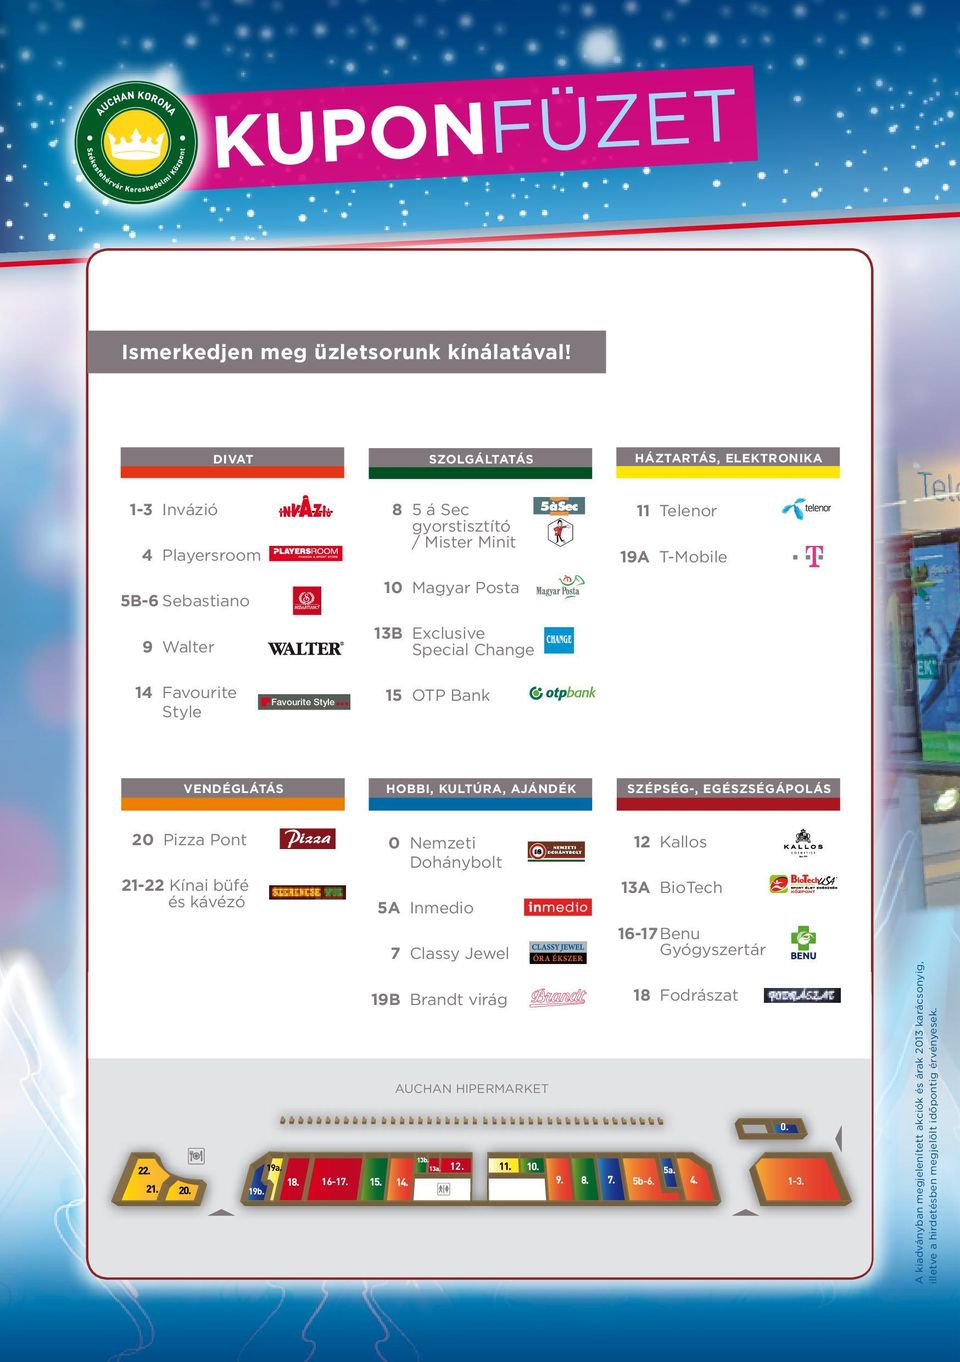 ü zl e t s o ha n k A k A 2013 tél /AuchanUzletsor - PDF Ingyenes letöltés